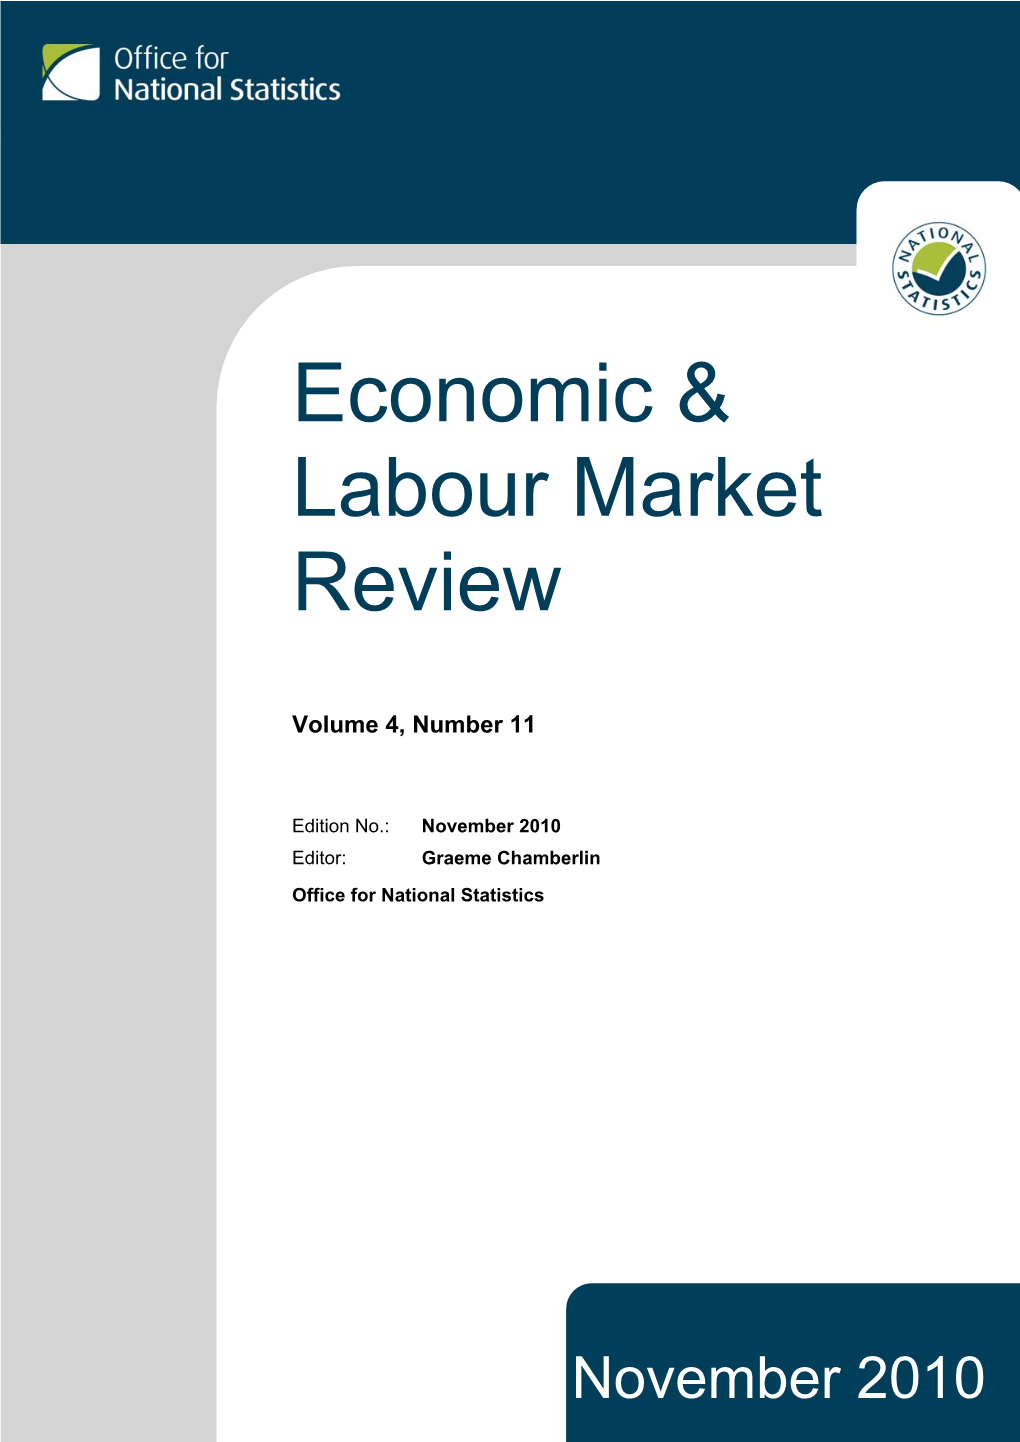 Economic & Labour Market Review